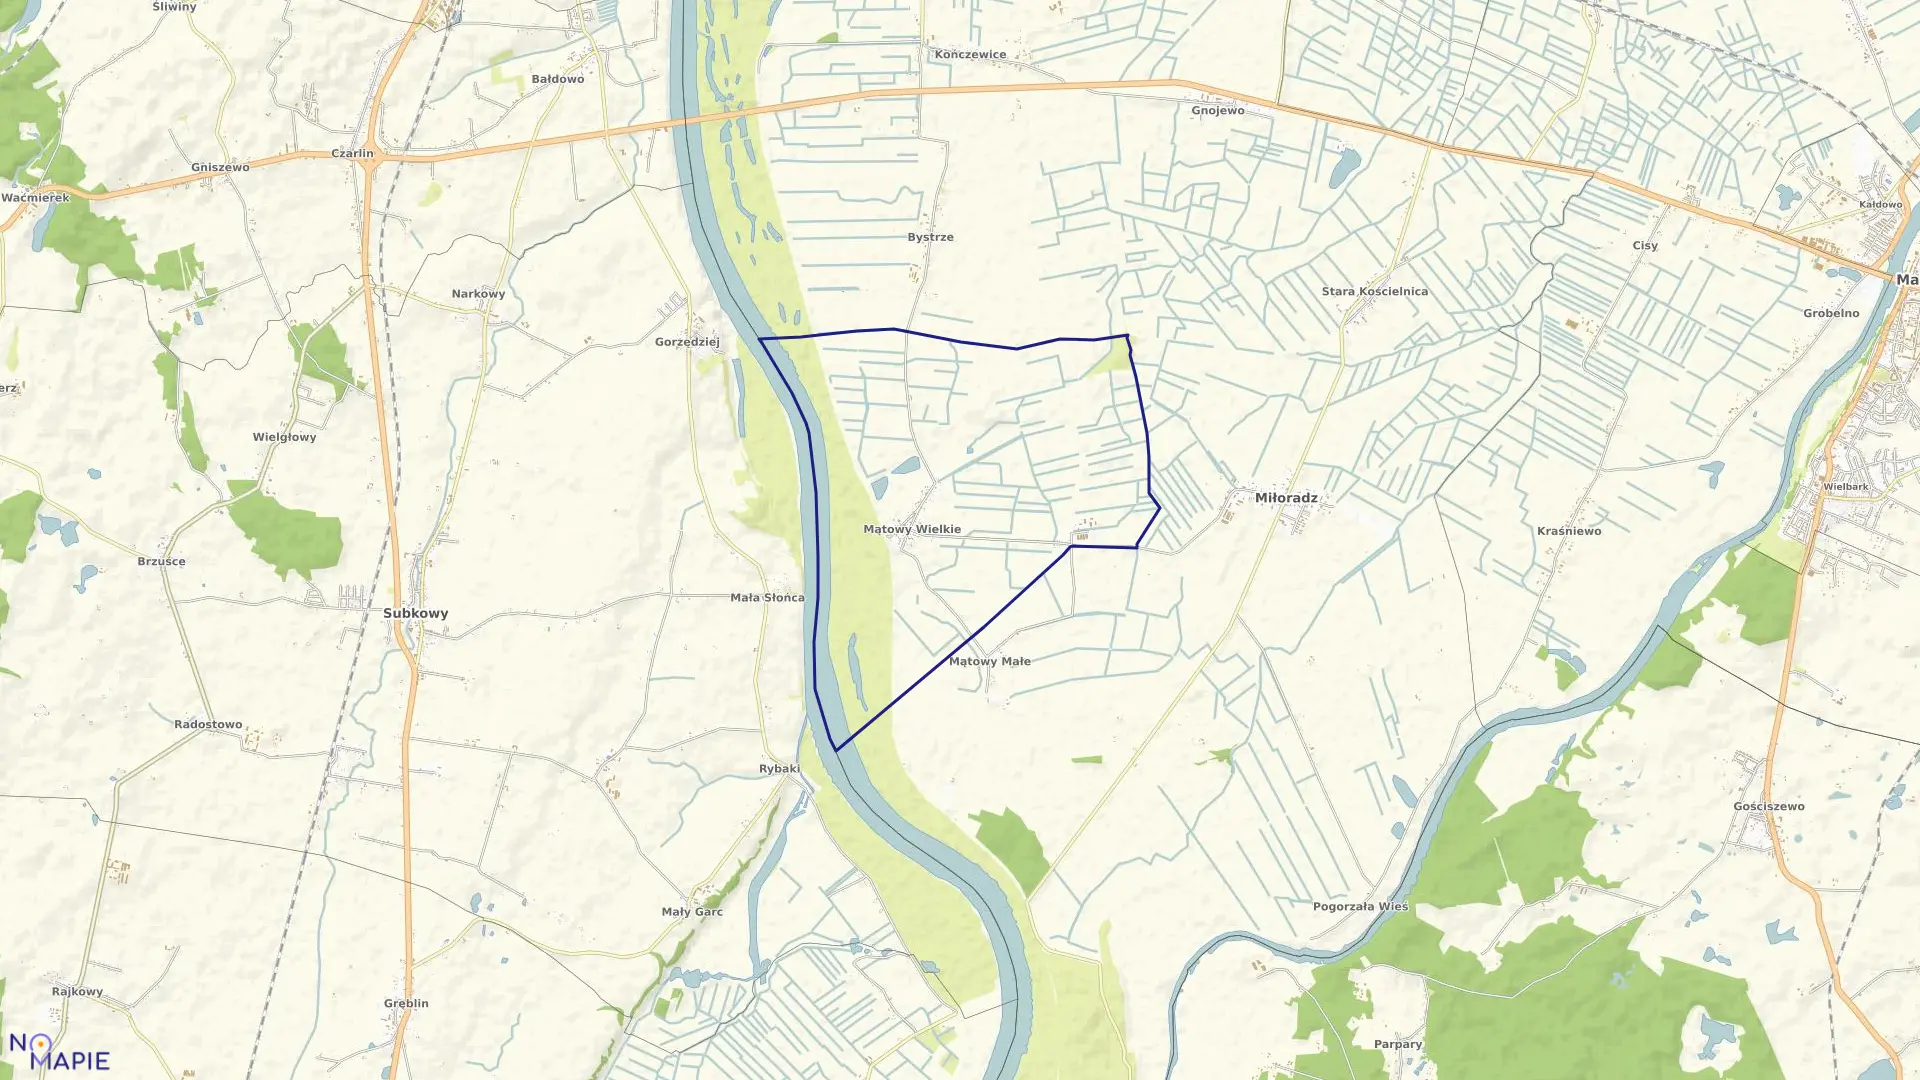 Mapa obrębu Mątowy Wielkie w gminie Miłoradz